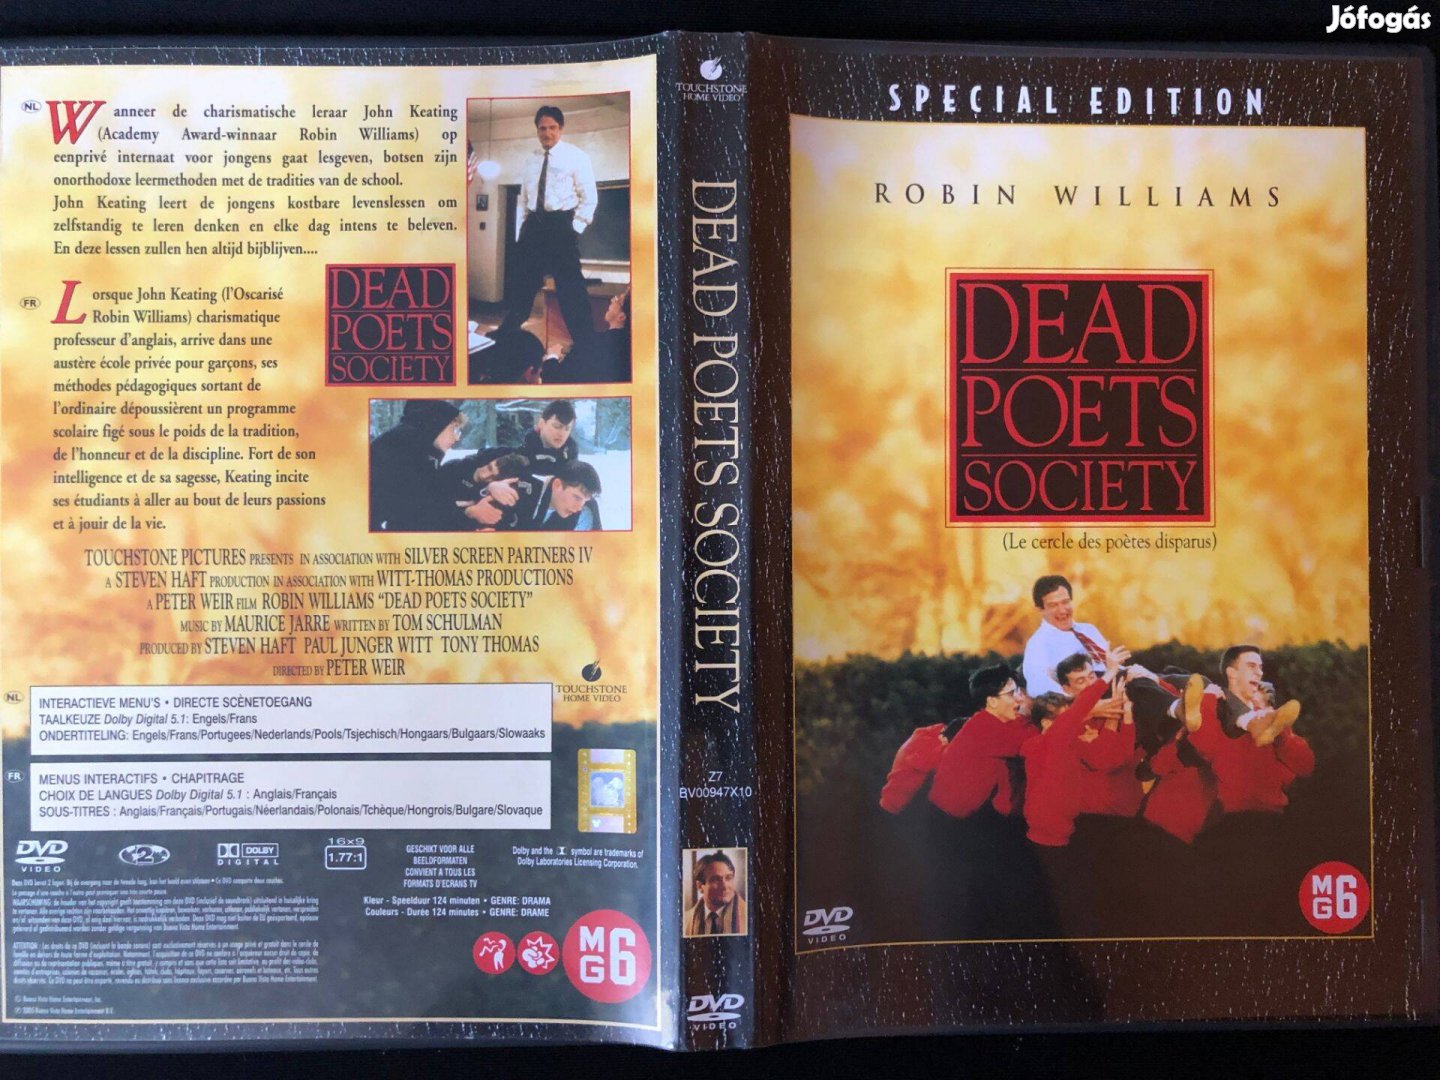 Holt költők társasága (karcmentes, Robin Williams) DVD